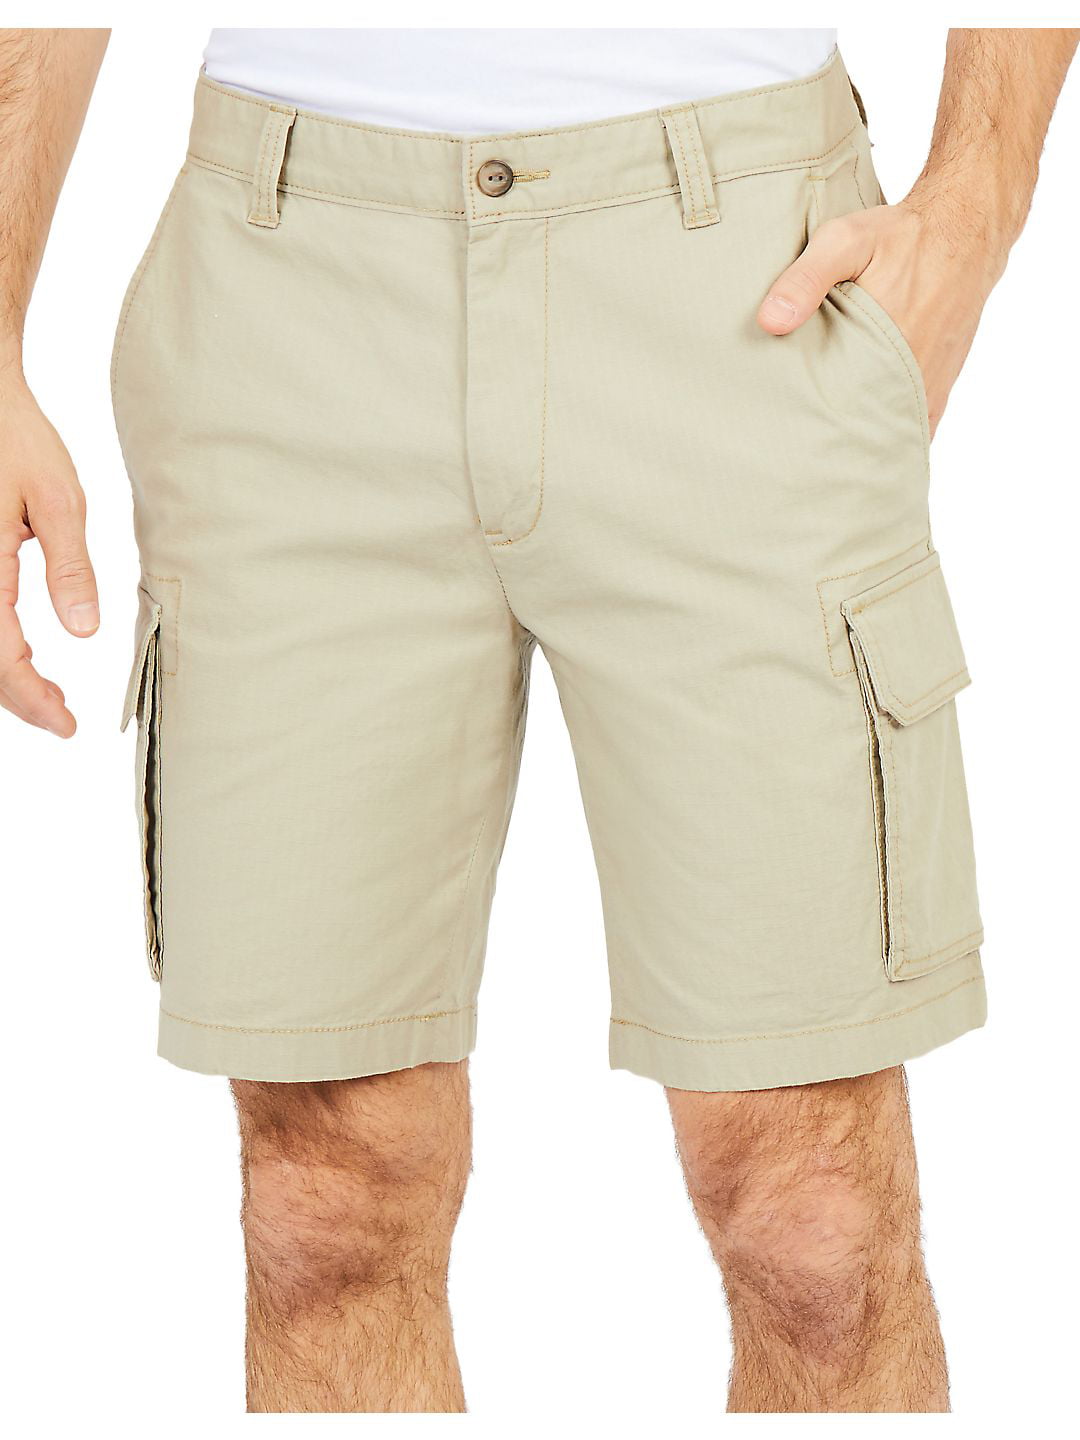 Classic Fit Ripstop Cargo Shorts - Walmart.com